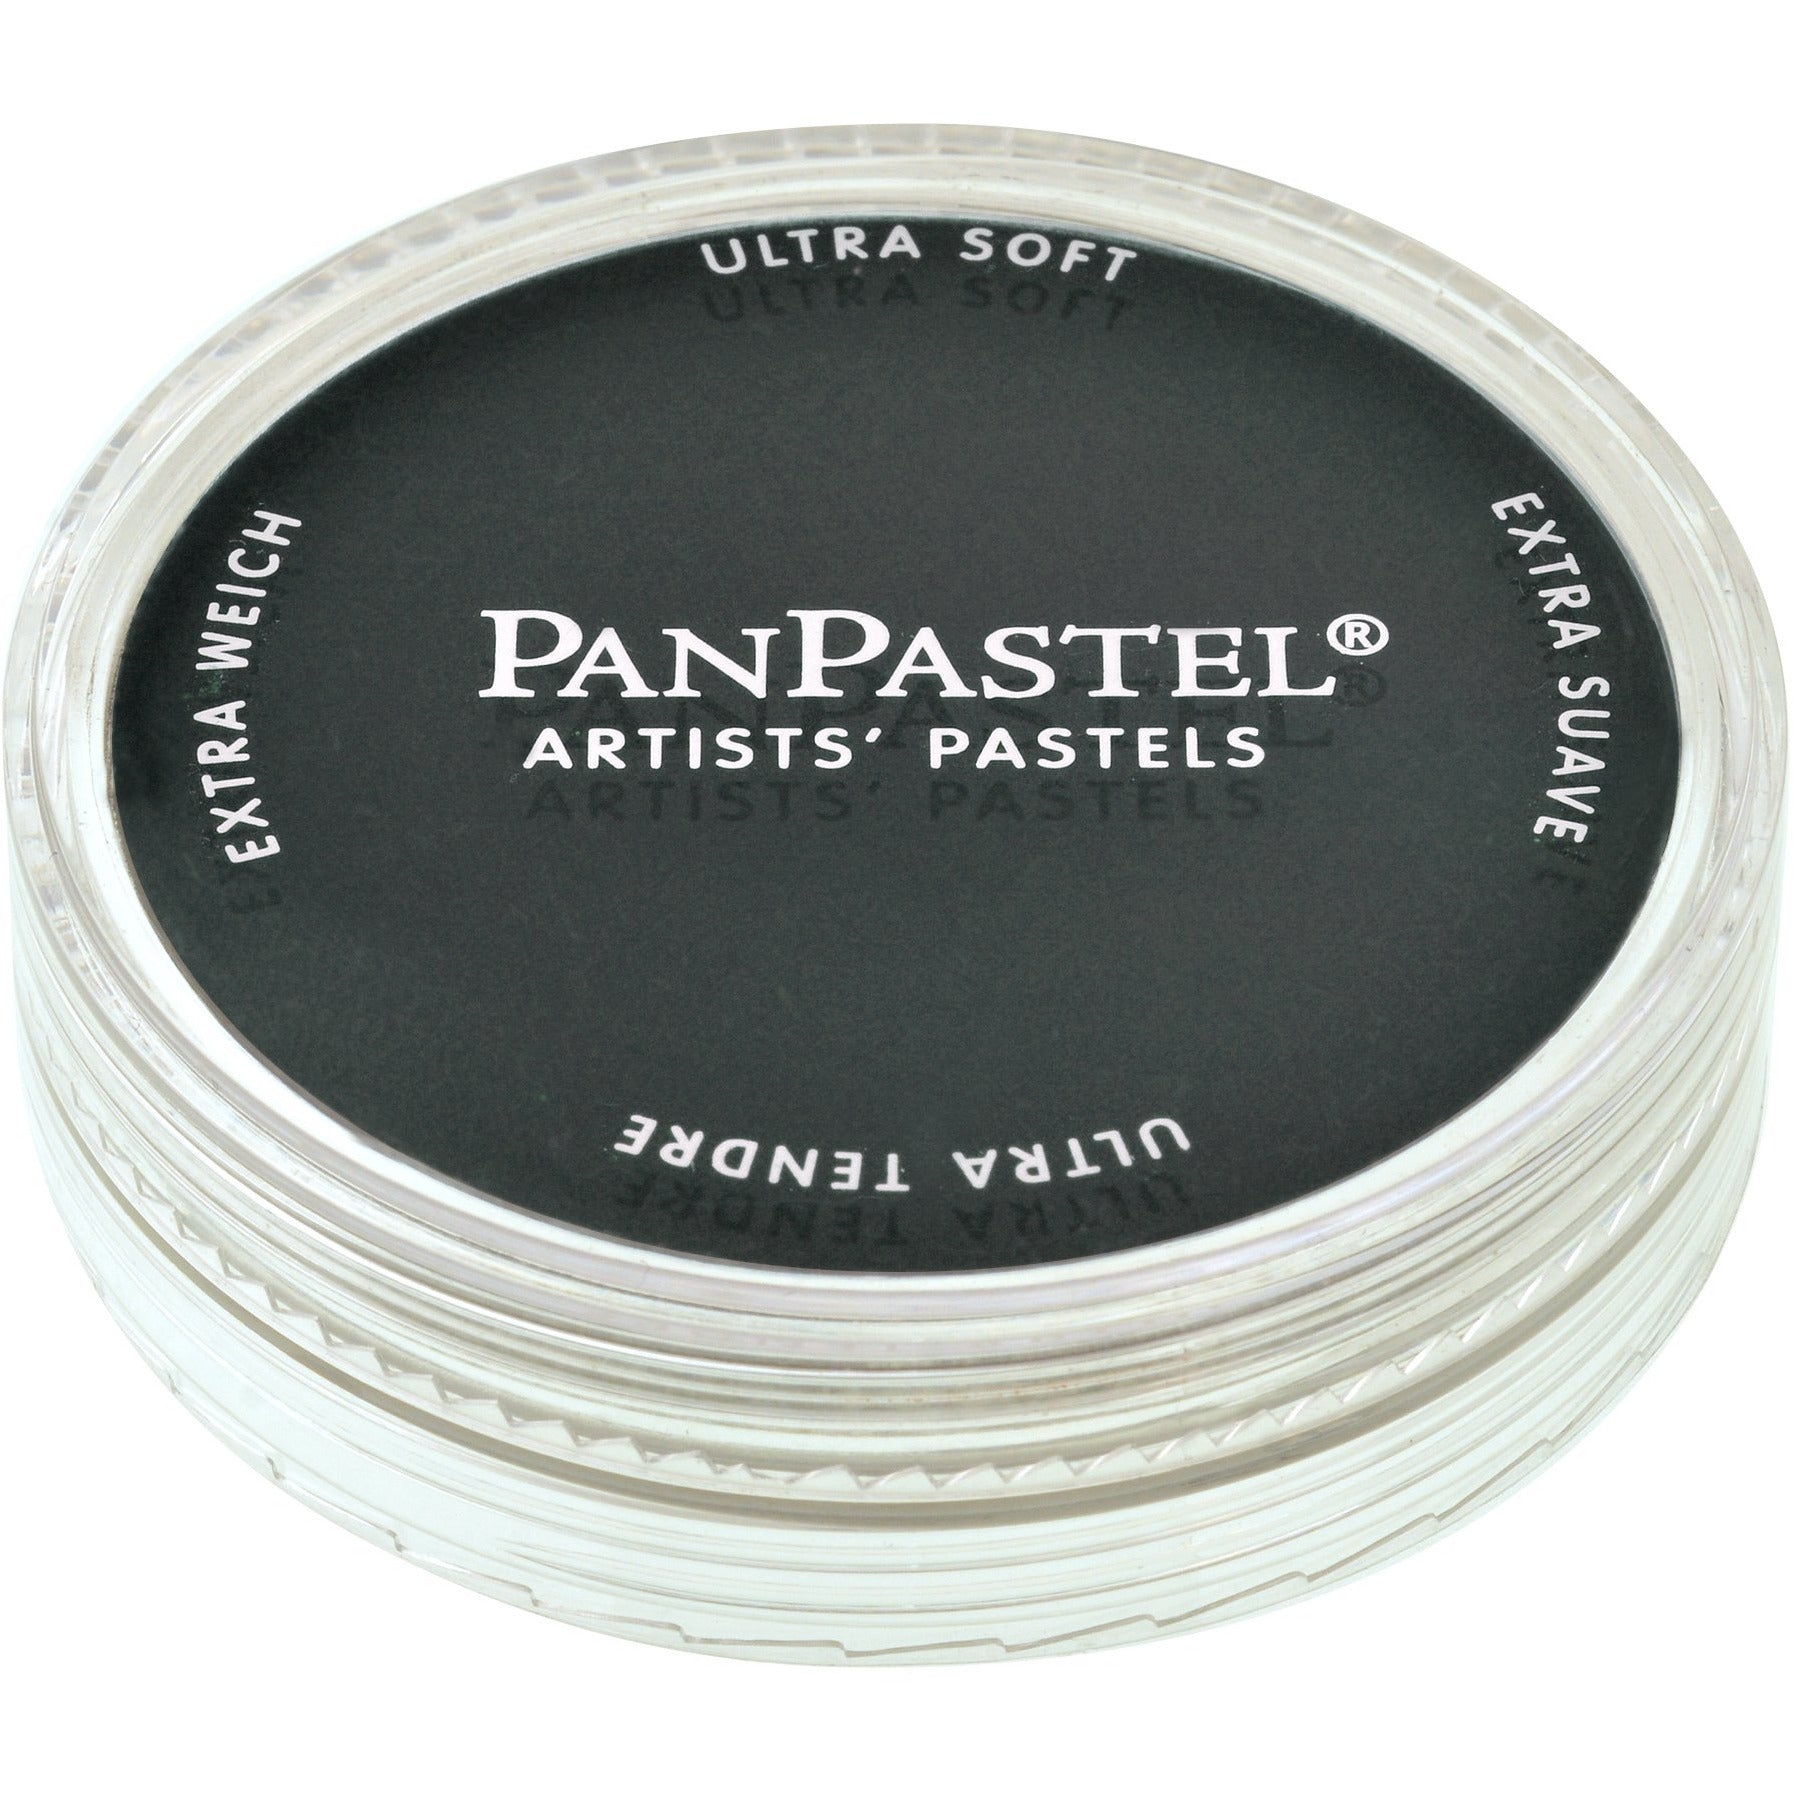 PanPastel, 28005, Artist Pastel, Black